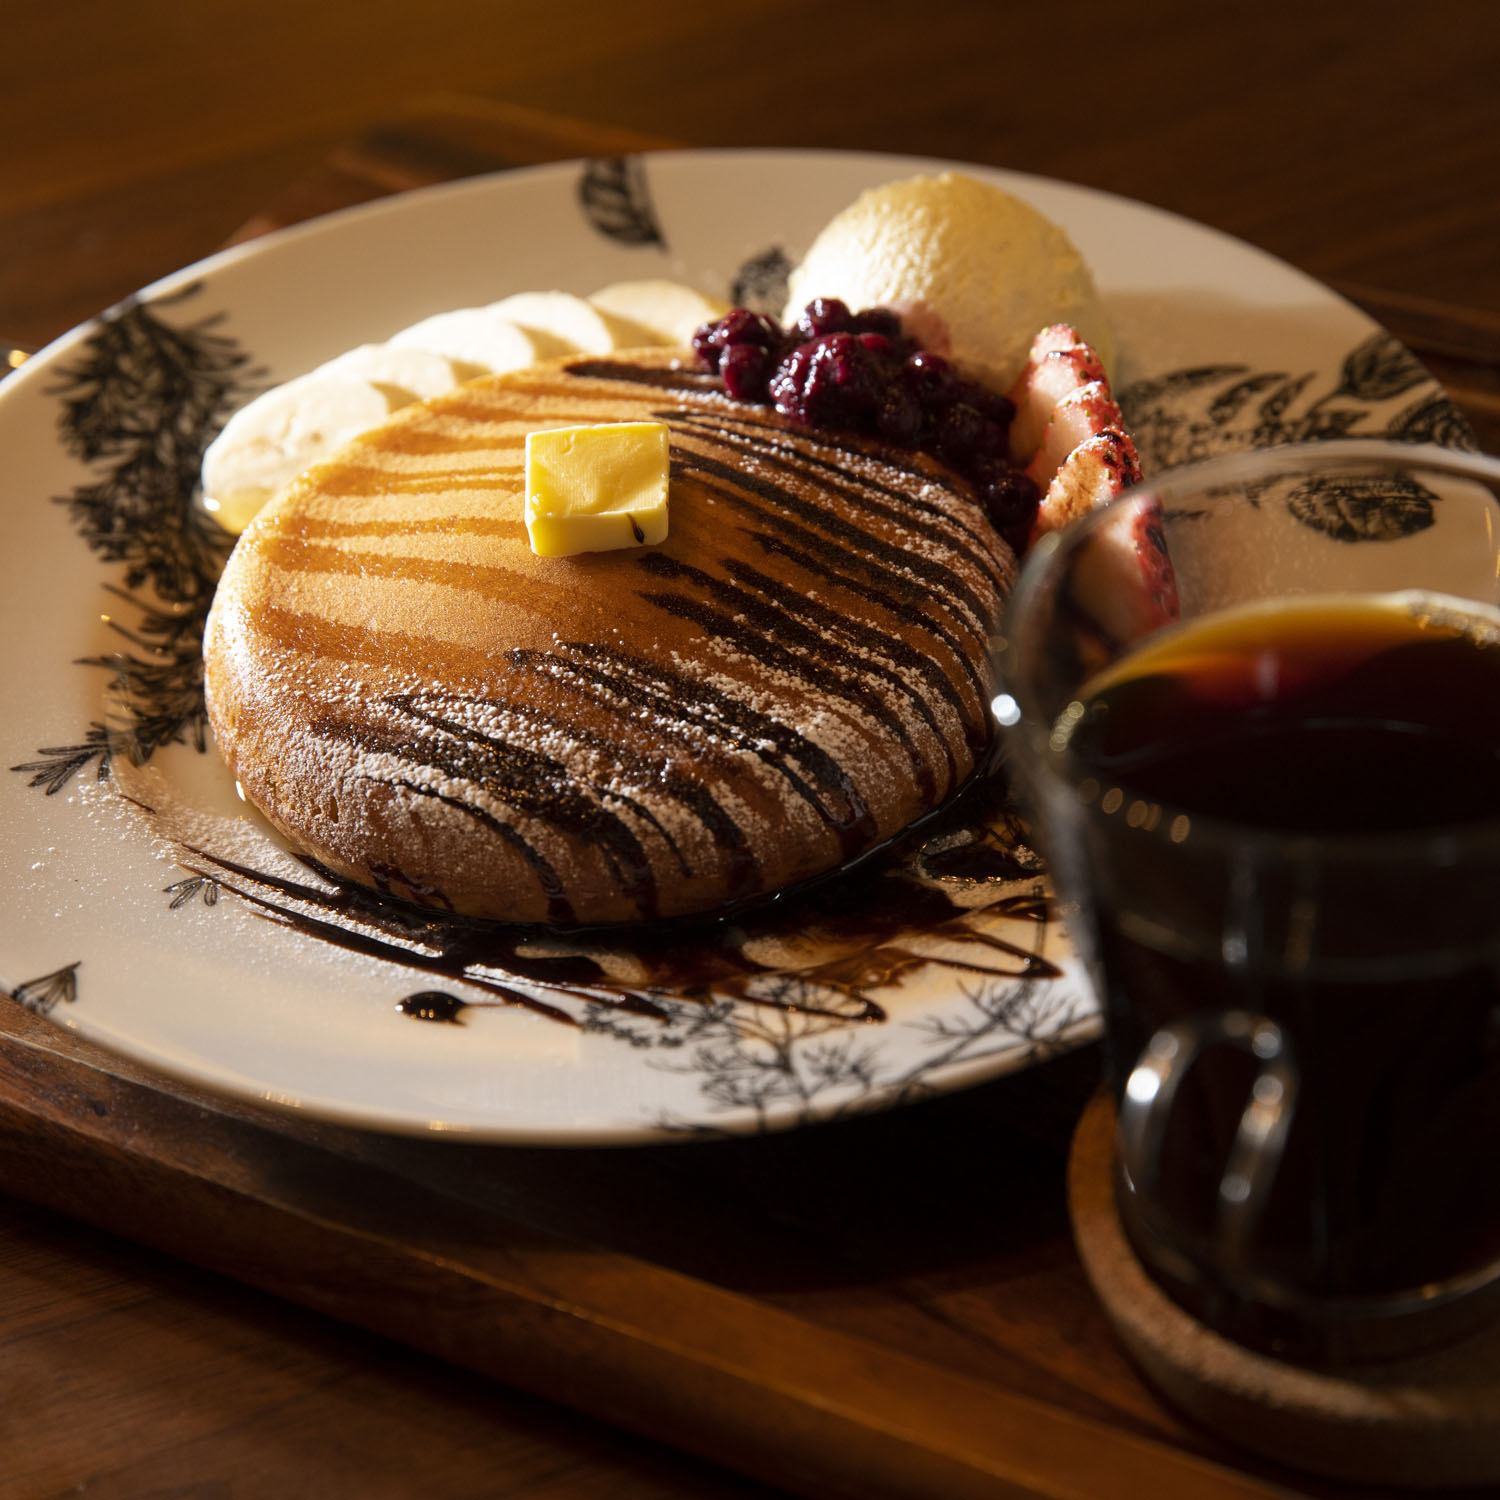 パンケーキ1100円は国産無農薬小麦使用、ドリンクセット1540円。千葉『Middle Earth Coffee』に特注したレムリアブレンドで。